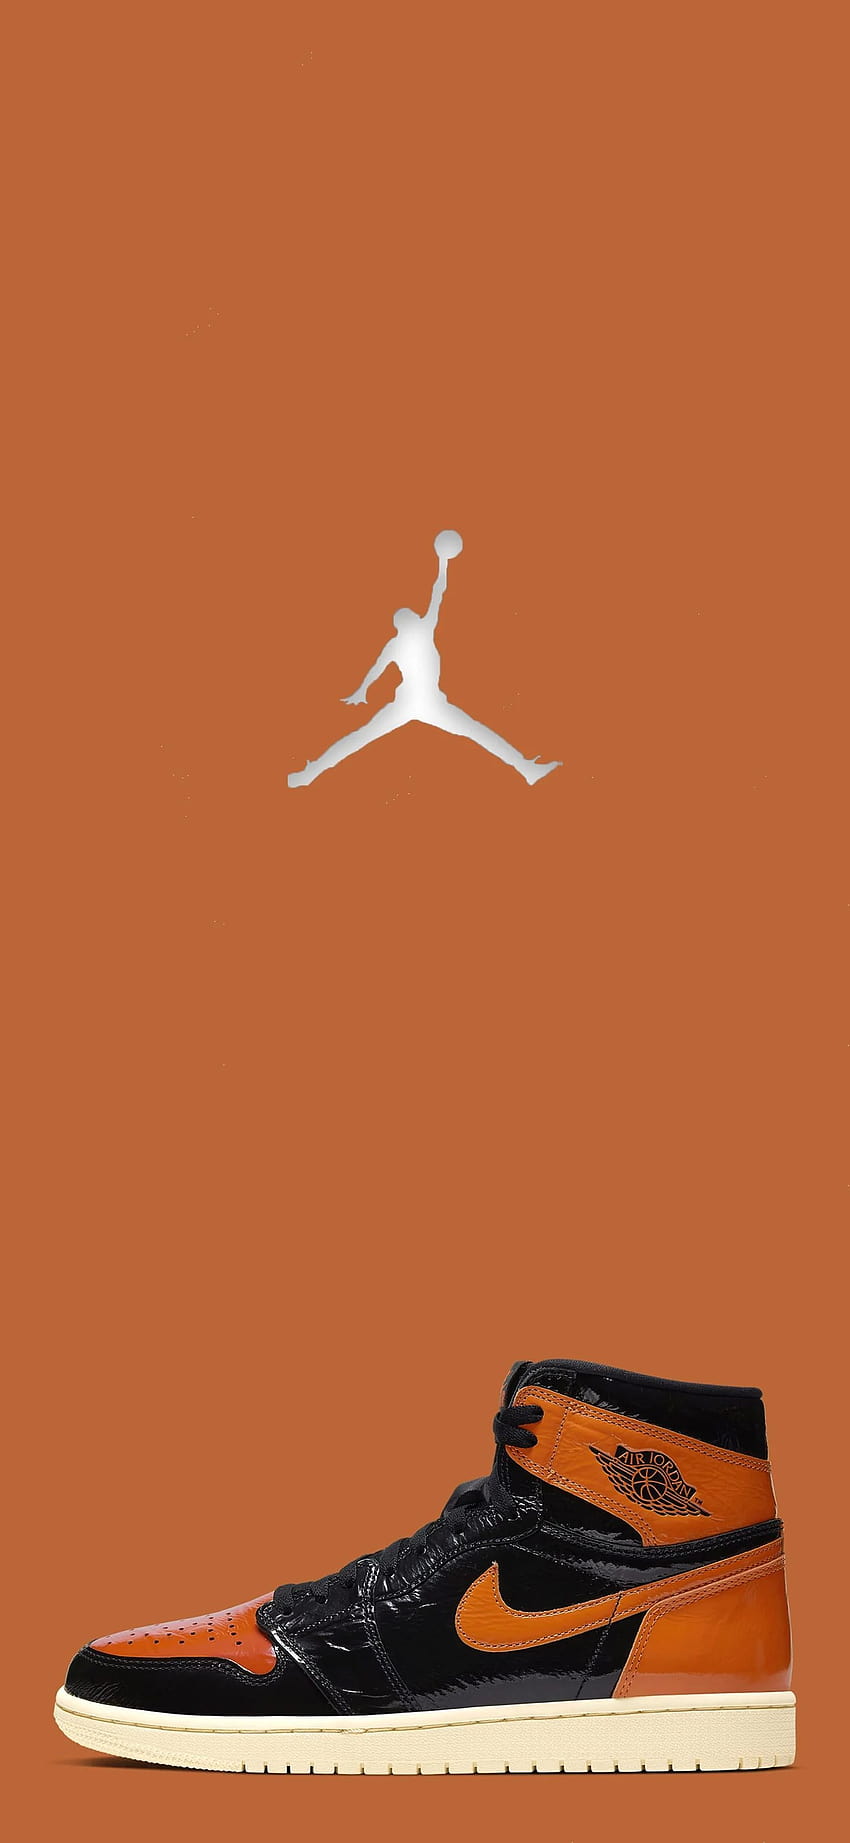 20 Jordan ideas, orange air jordan HD phone wallpaper